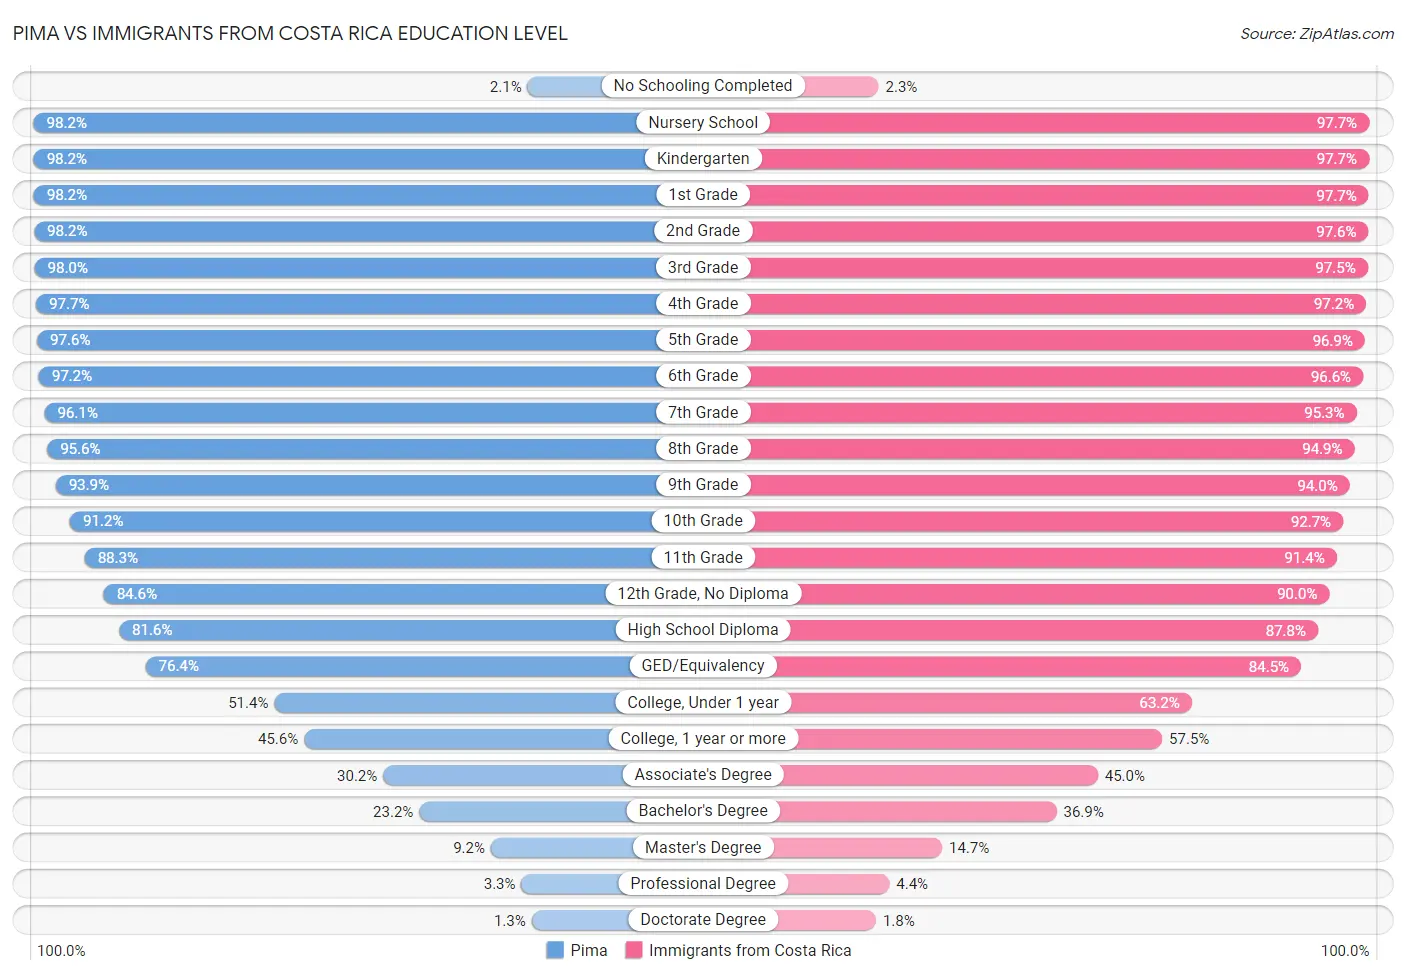 Pima vs Immigrants from Costa Rica Education Level